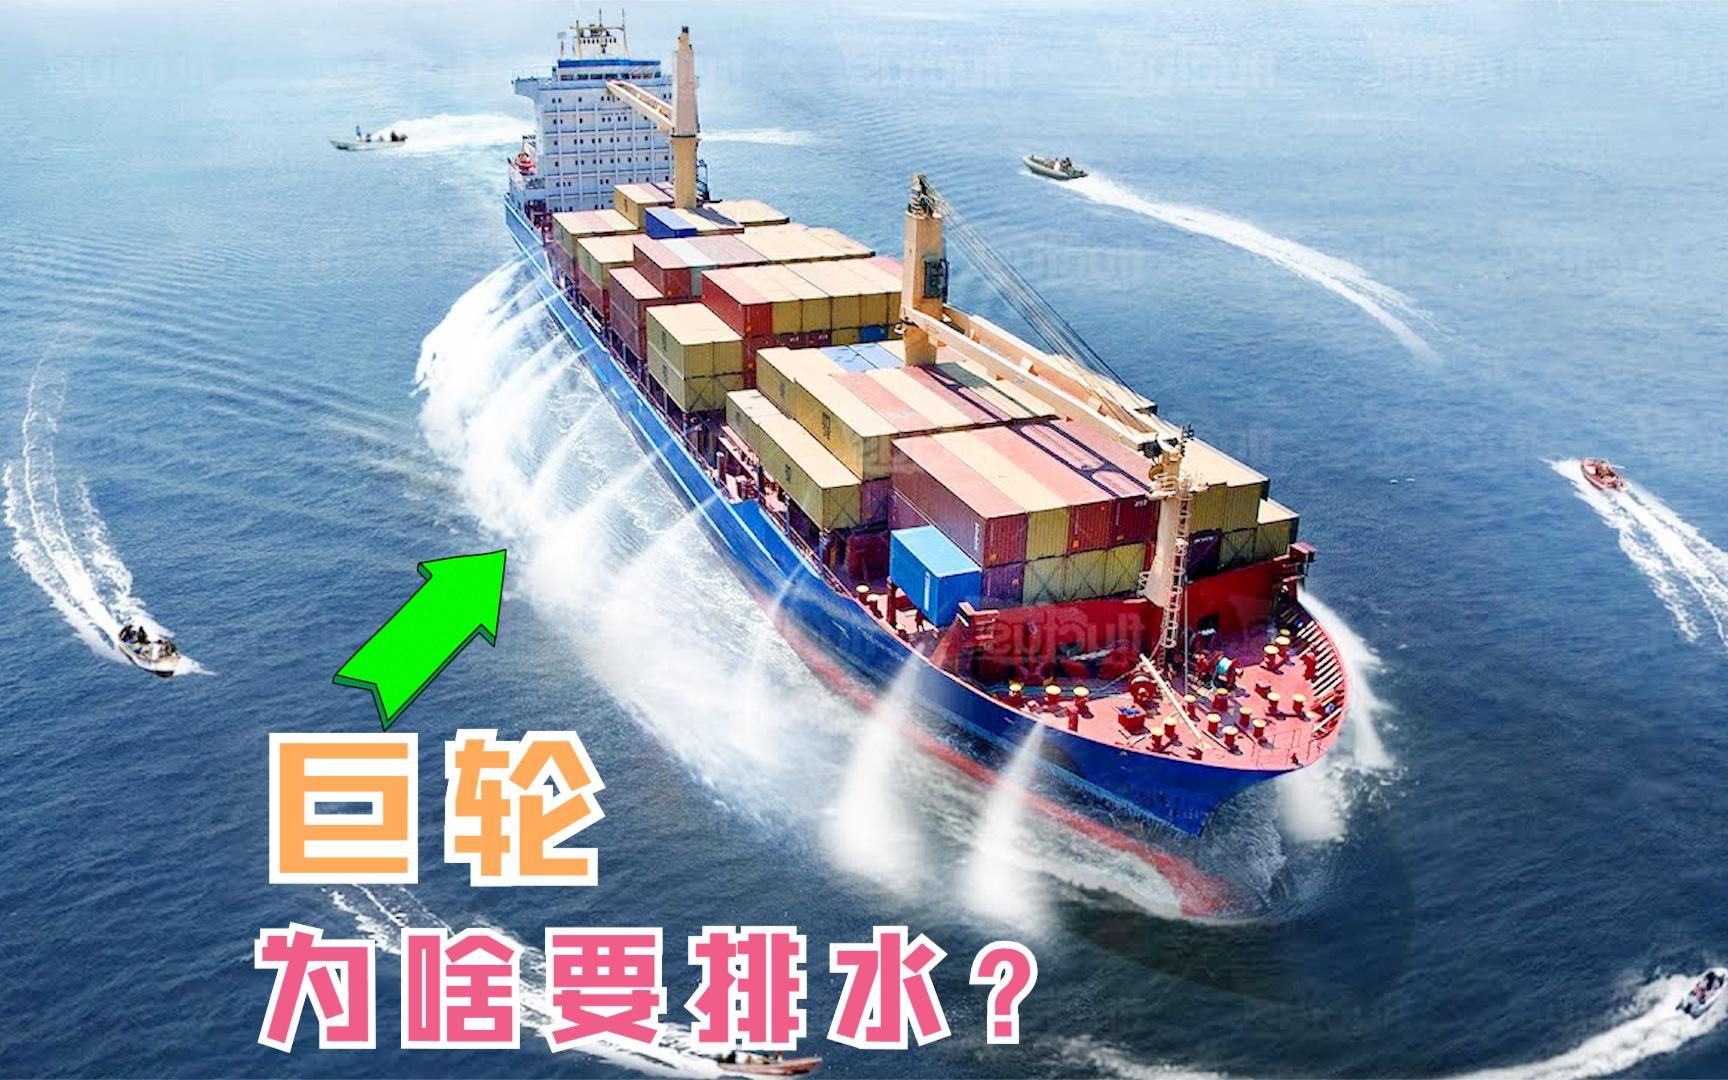 为啥巨轮在航行的时候,要不断的往外排水?难道是船体漏了吗